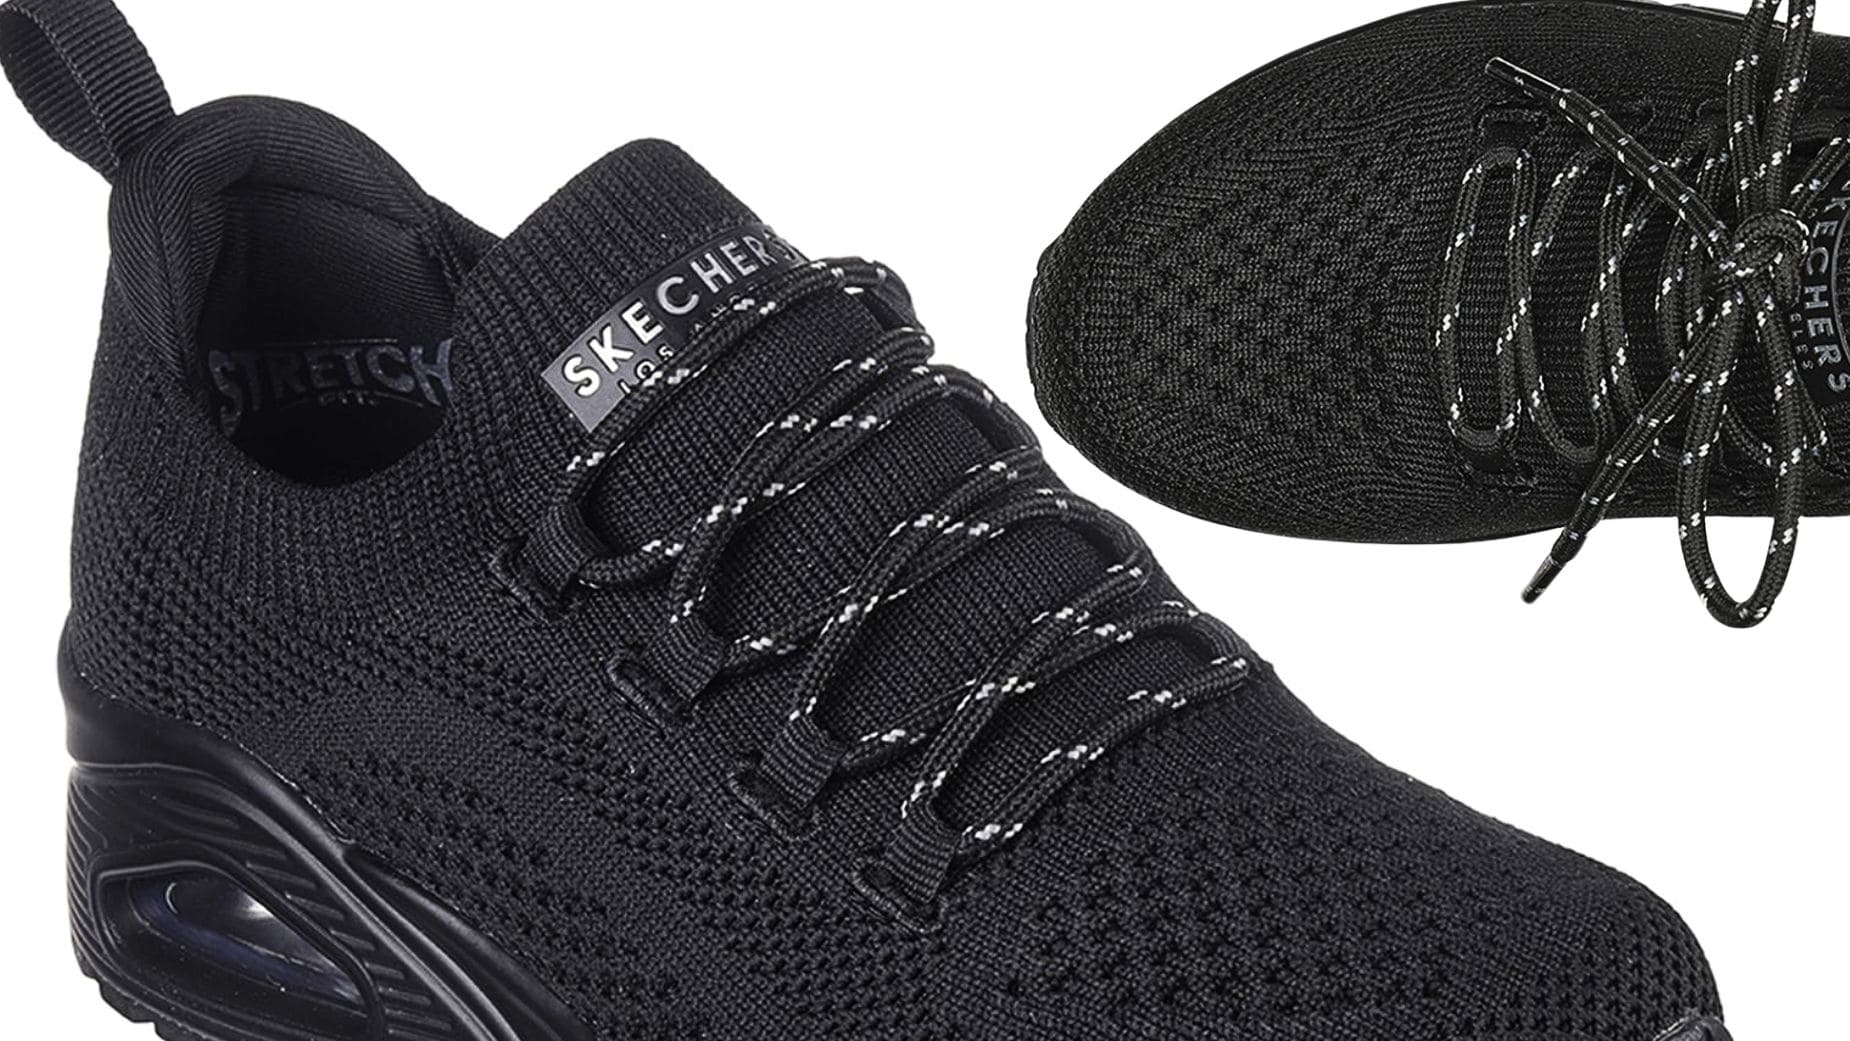 El outlet de Decathlon, hace una rebaja extrema en zapatillas negras de  Skechers y Adidas